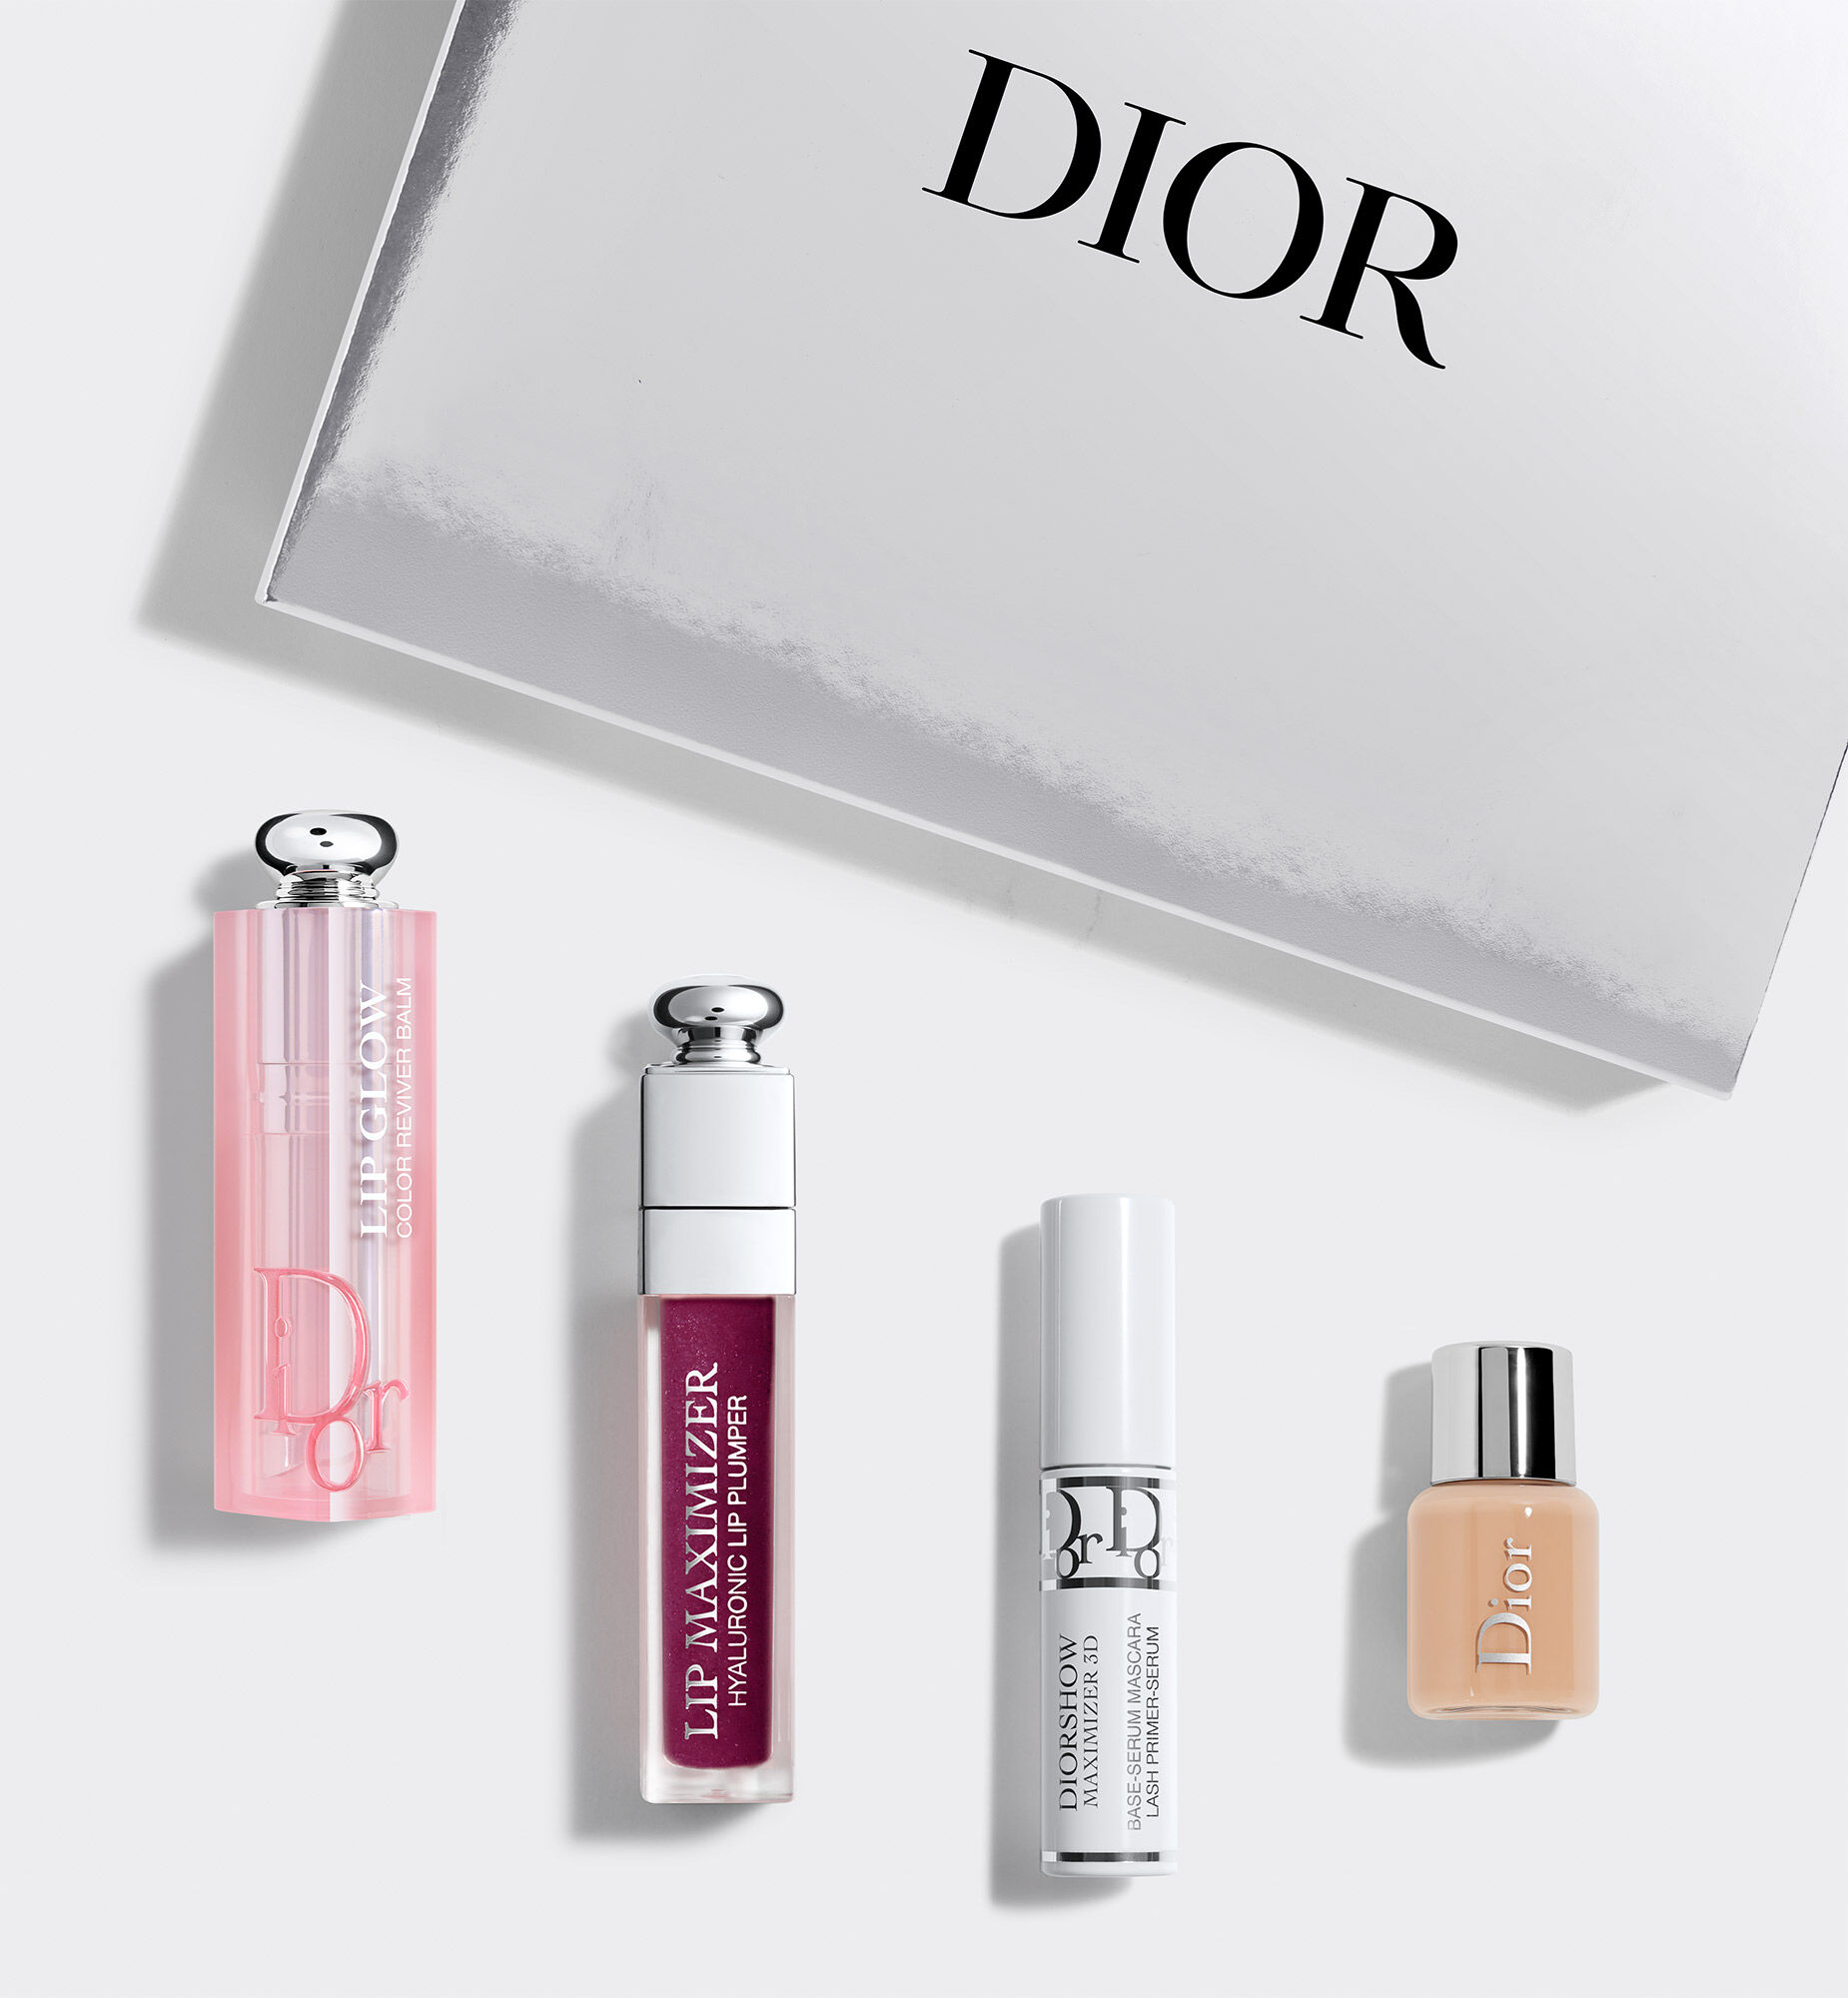 dior lipstick gift set super buy off 64  wwwhumumssedubo